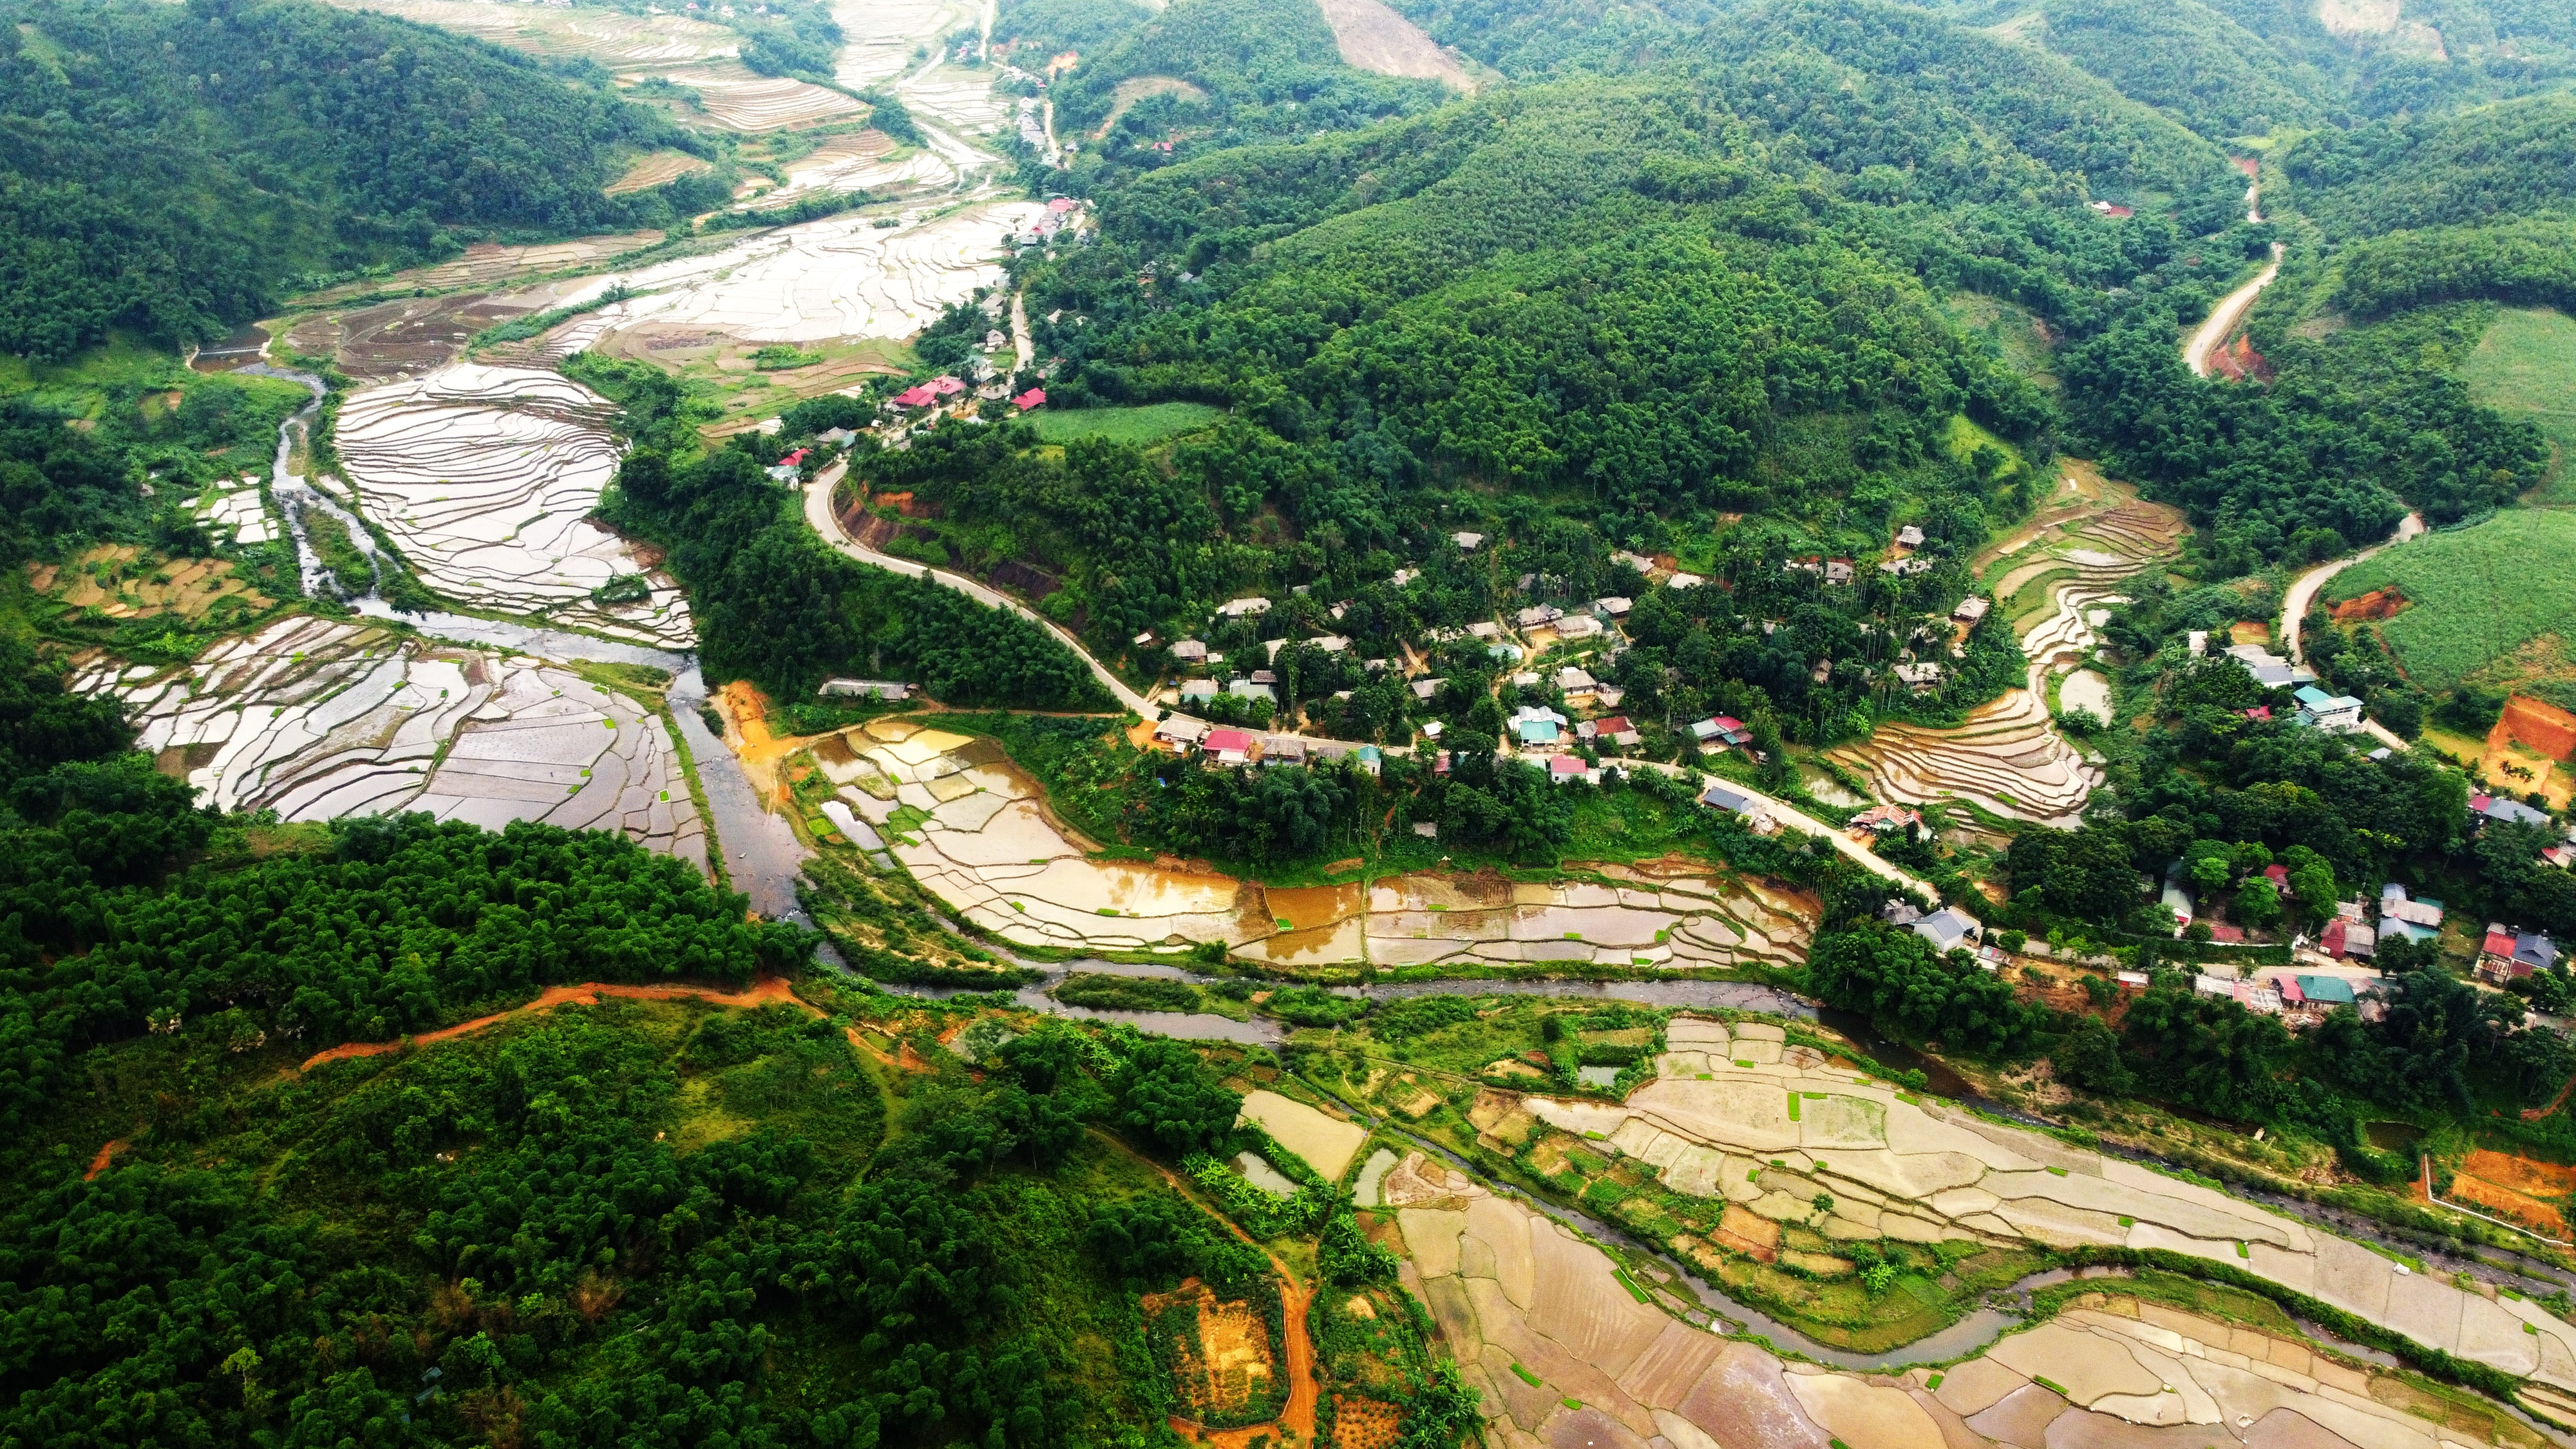 Khung cảnh thơ mộng ruộng bậc thang mùa con nước ở Thanh Hóa